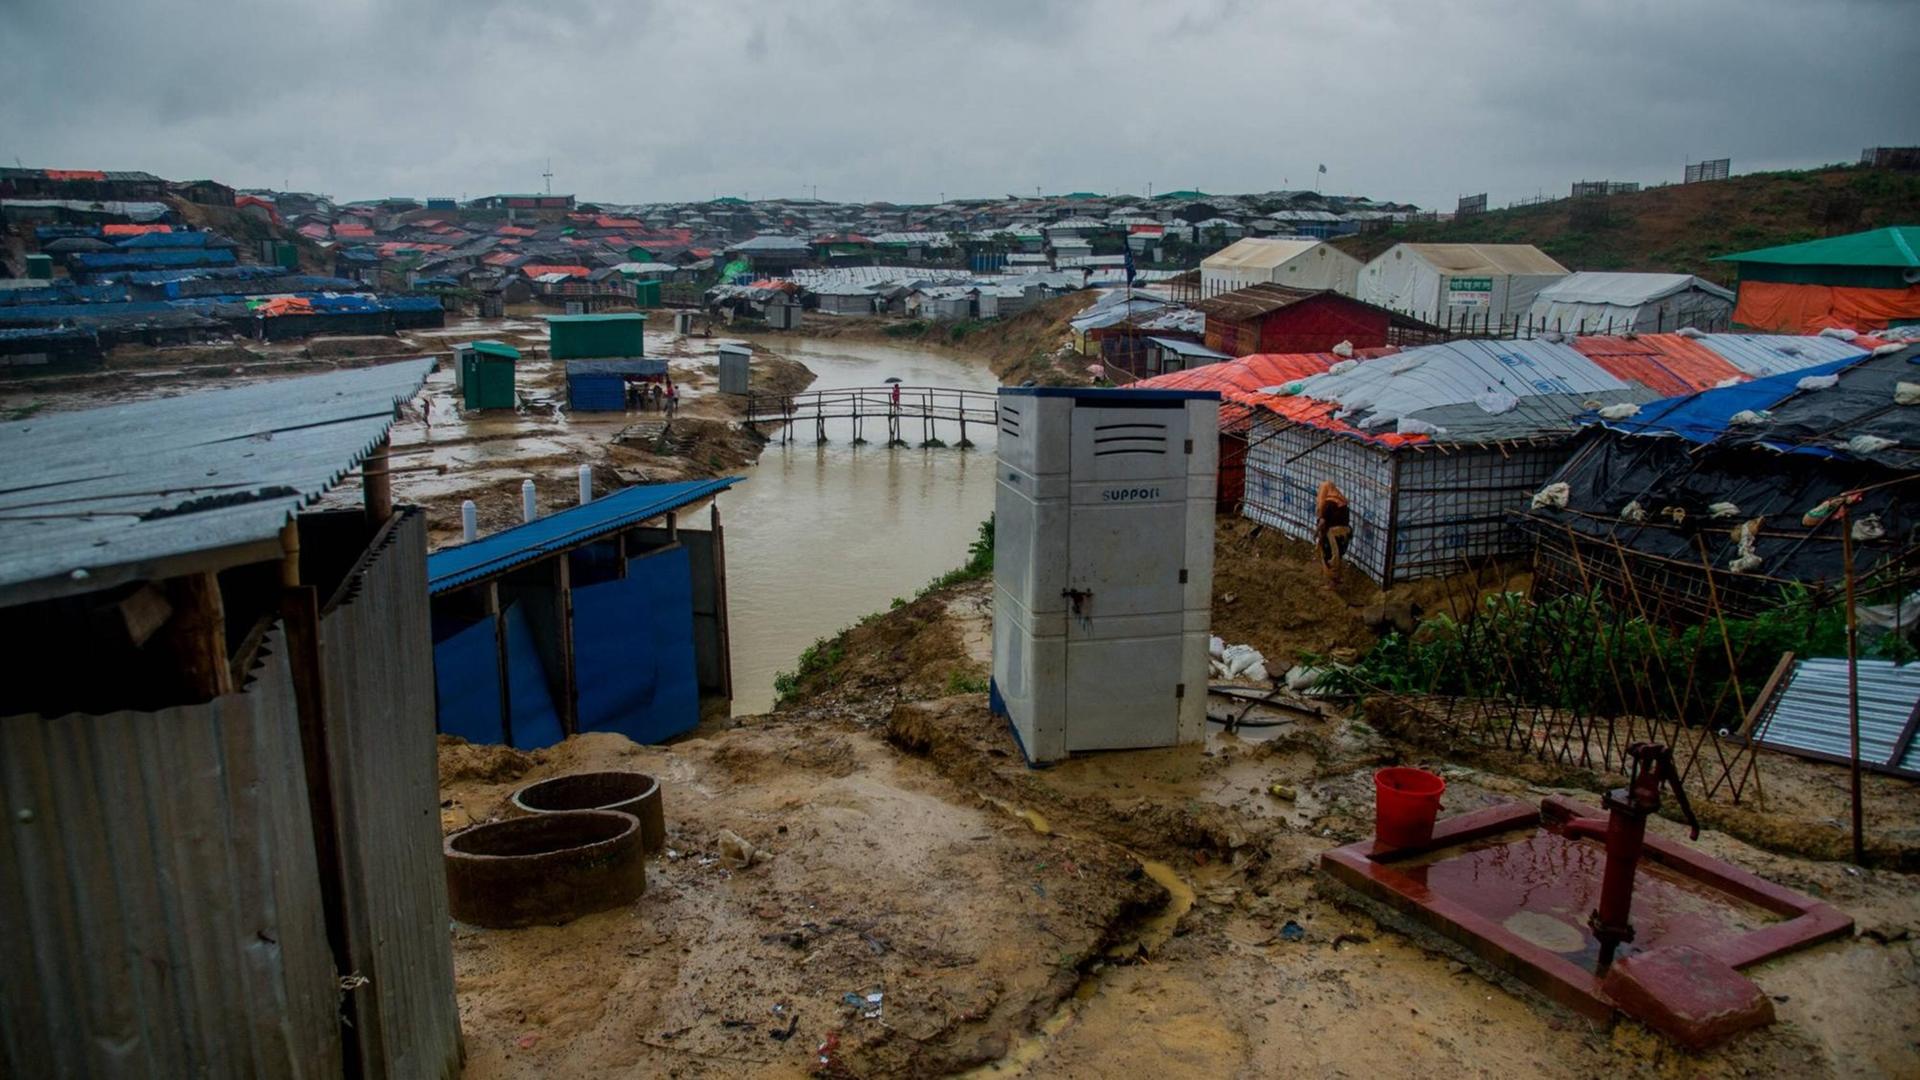 Blick über die aus Planen bestehenden Dächer der Hütten im Flüchtlingslager Kutupalong in Bangladesch im Juni 2018. Durch das Lager läuft ein Fluss, die Erde ist durchnässt und dreckig.